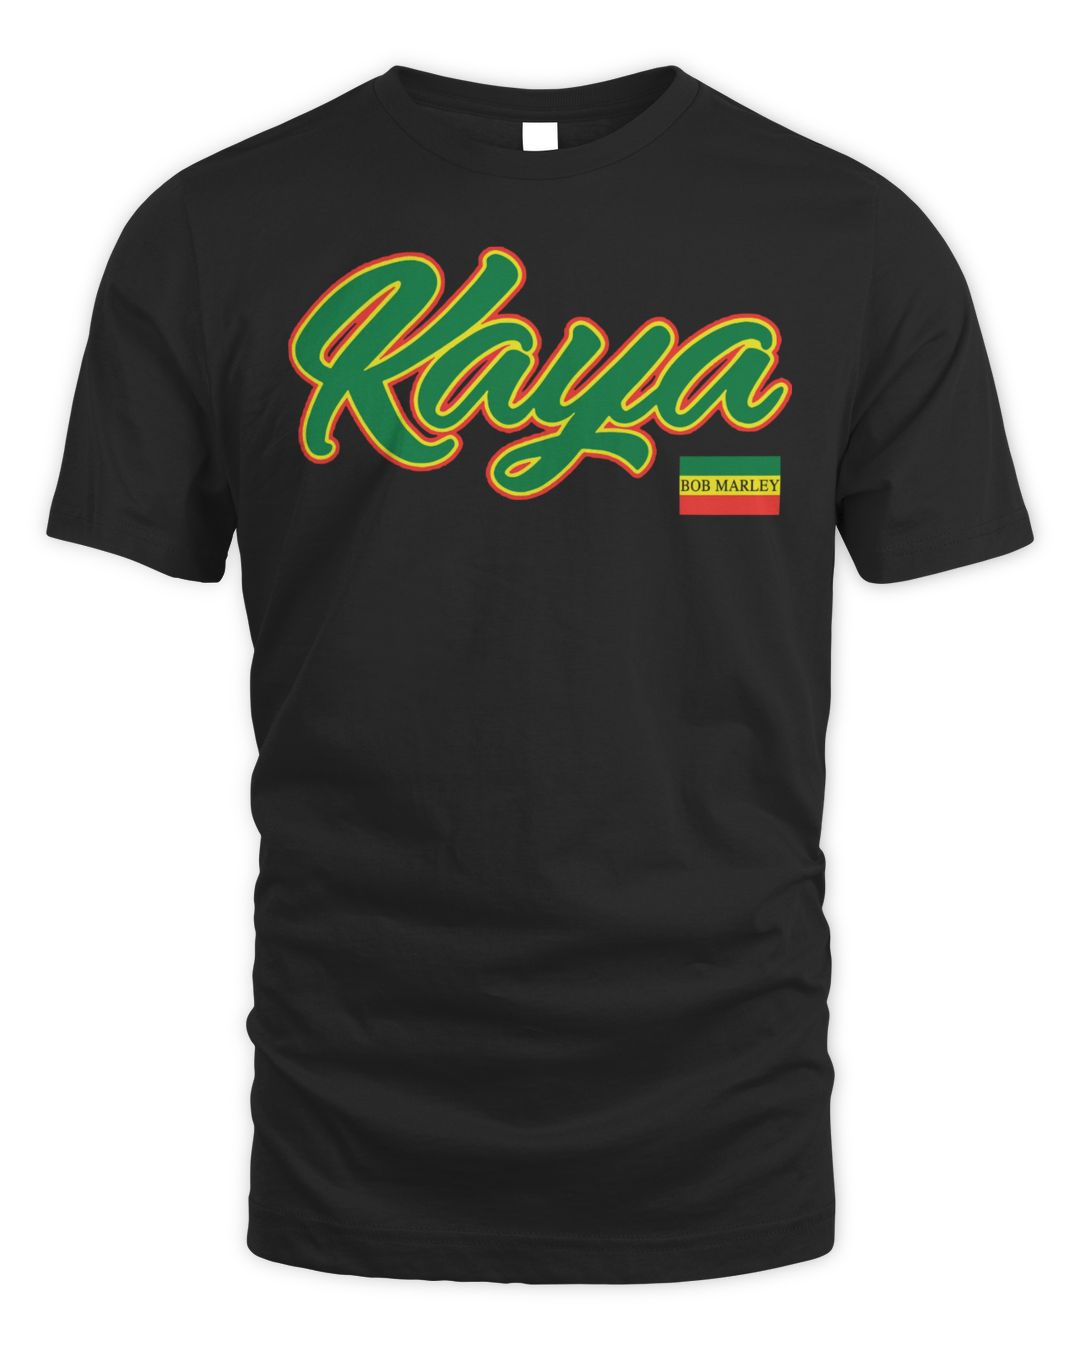 Bob Marley Merch Kaya Shirt